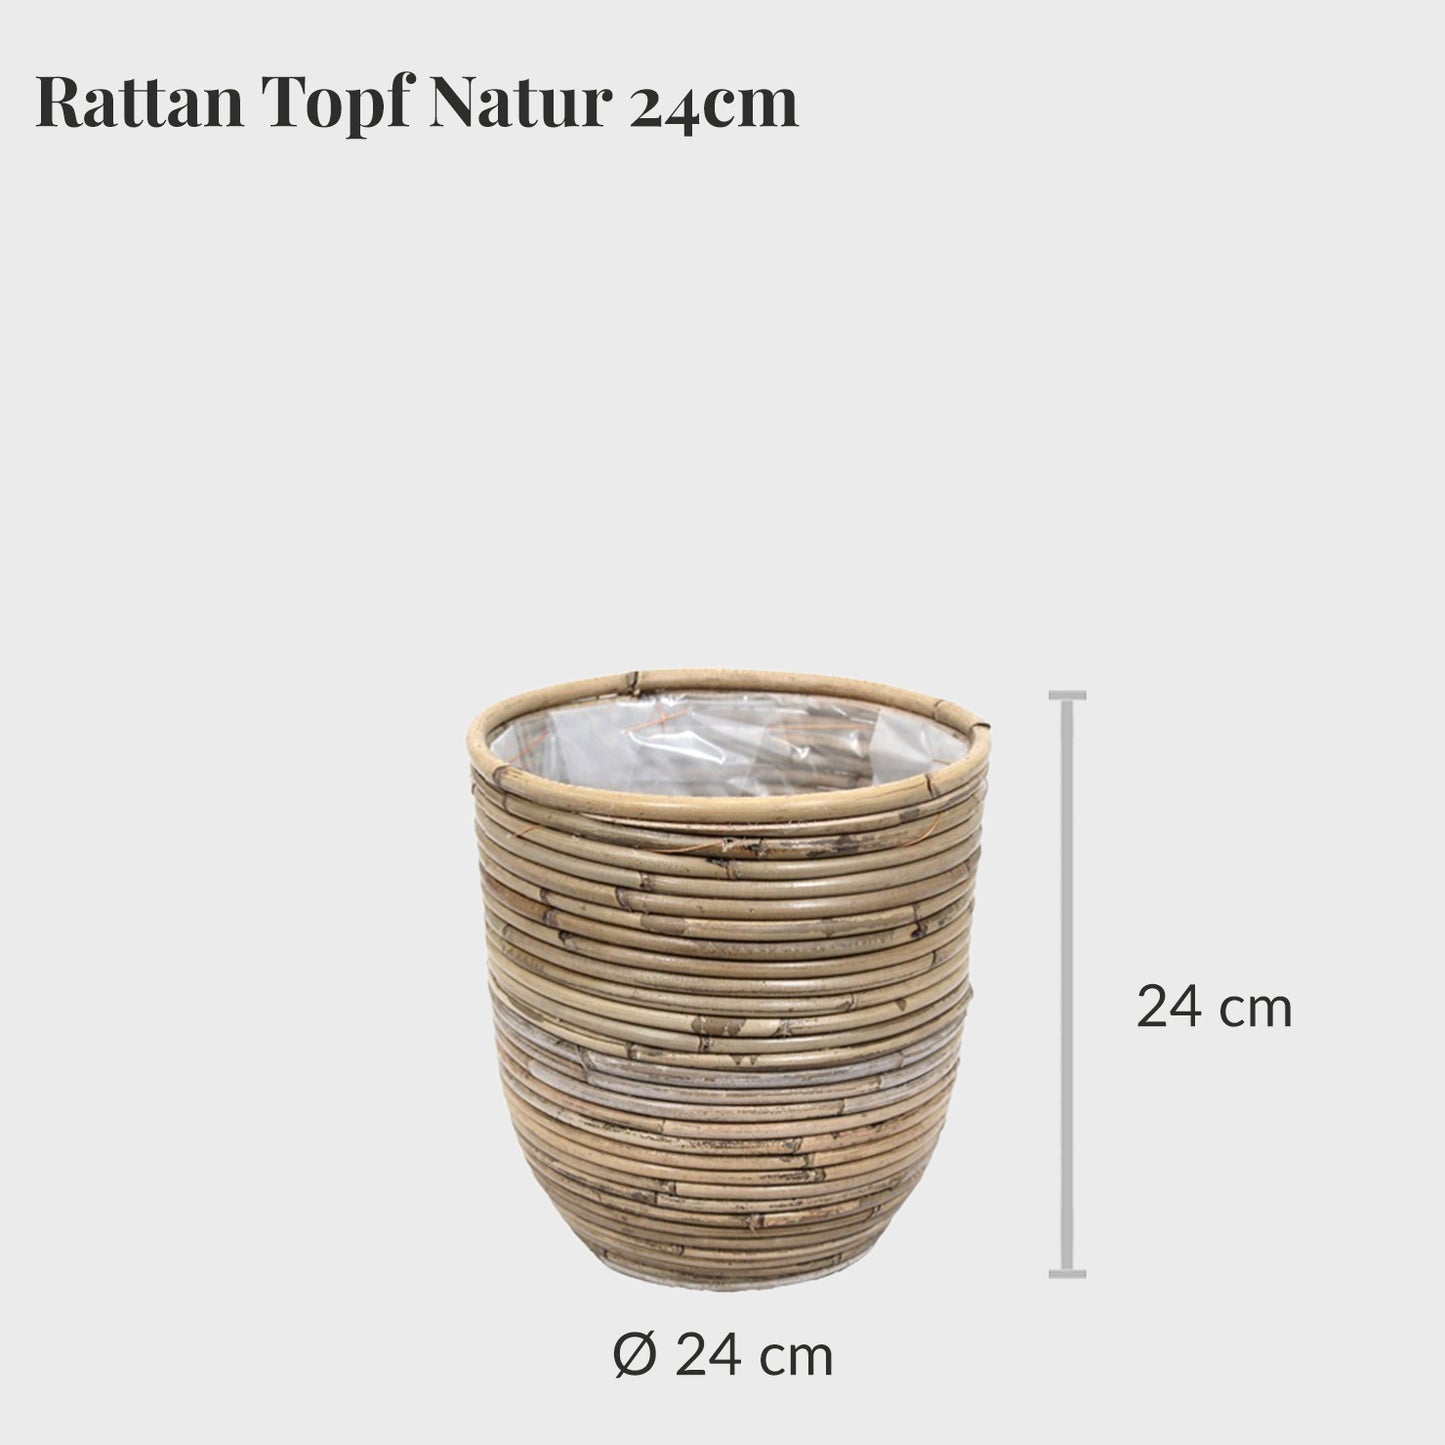 Rattan Topf Natur 24cm